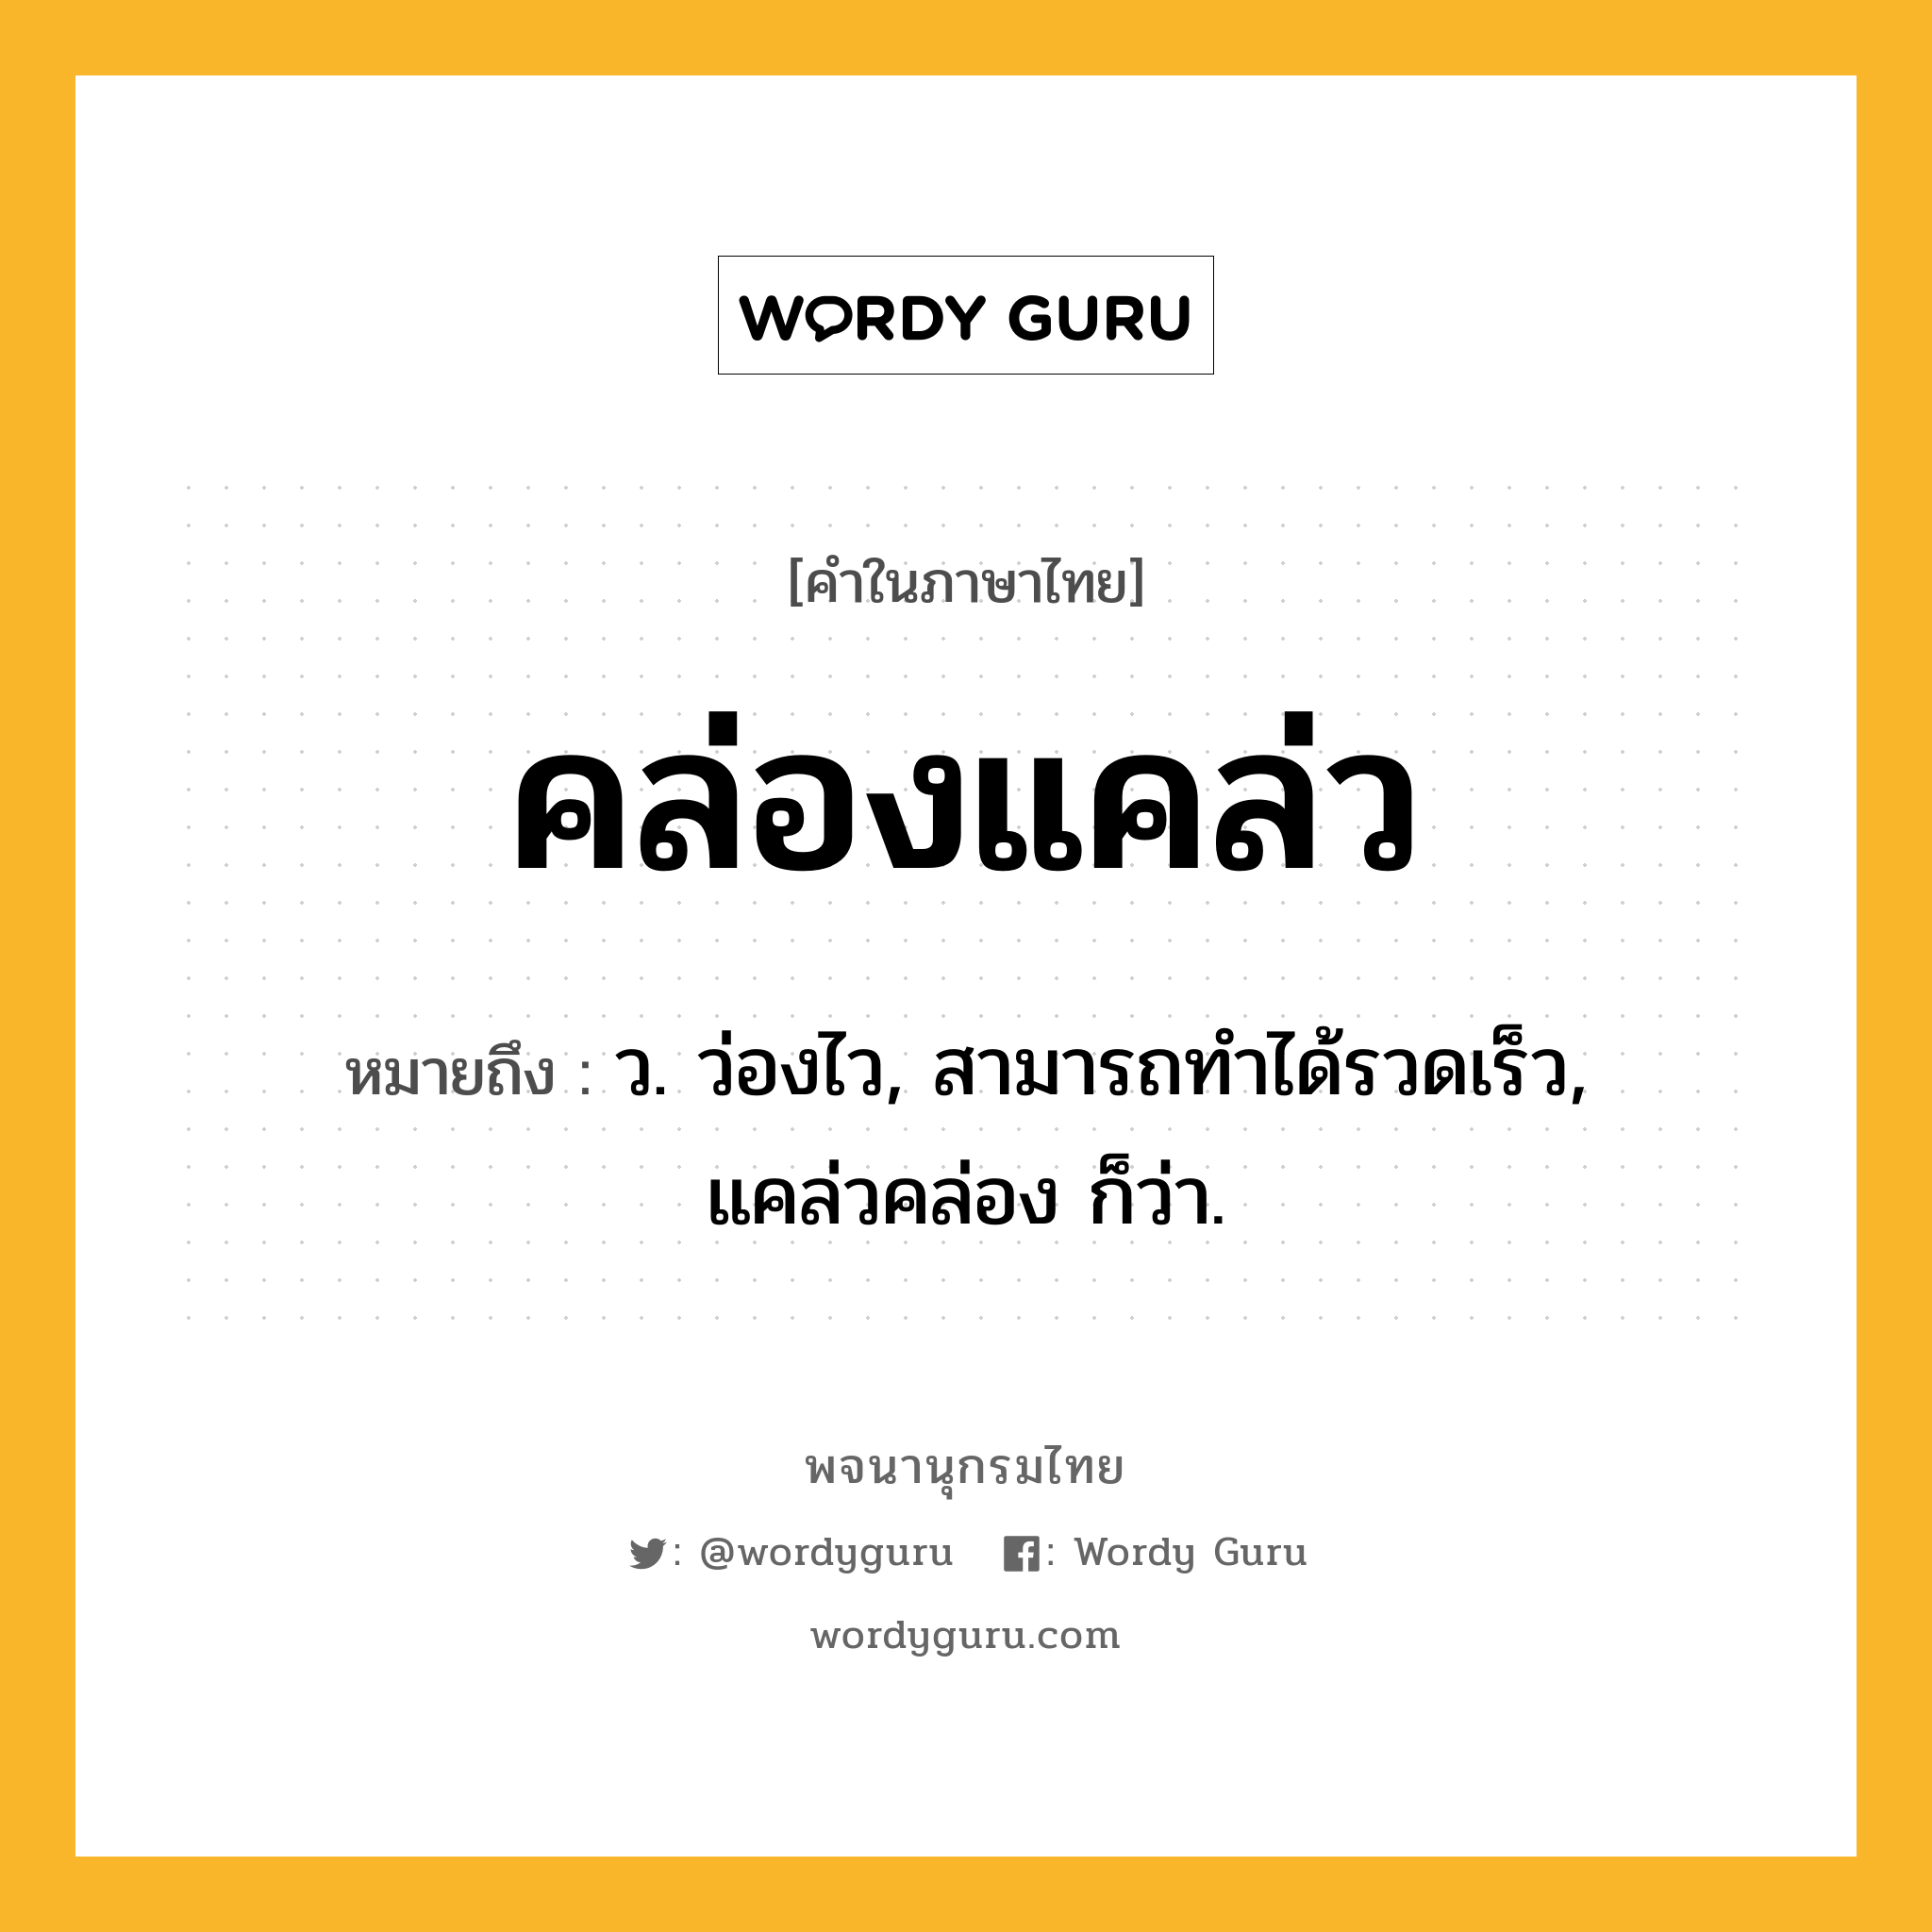 คล่องแคล่ว หมายถึงอะไร?, คำในภาษาไทย คล่องแคล่ว หมายถึง ว. ว่องไว, สามารถทําได้รวดเร็ว, แคล่วคล่อง ก็ว่า.